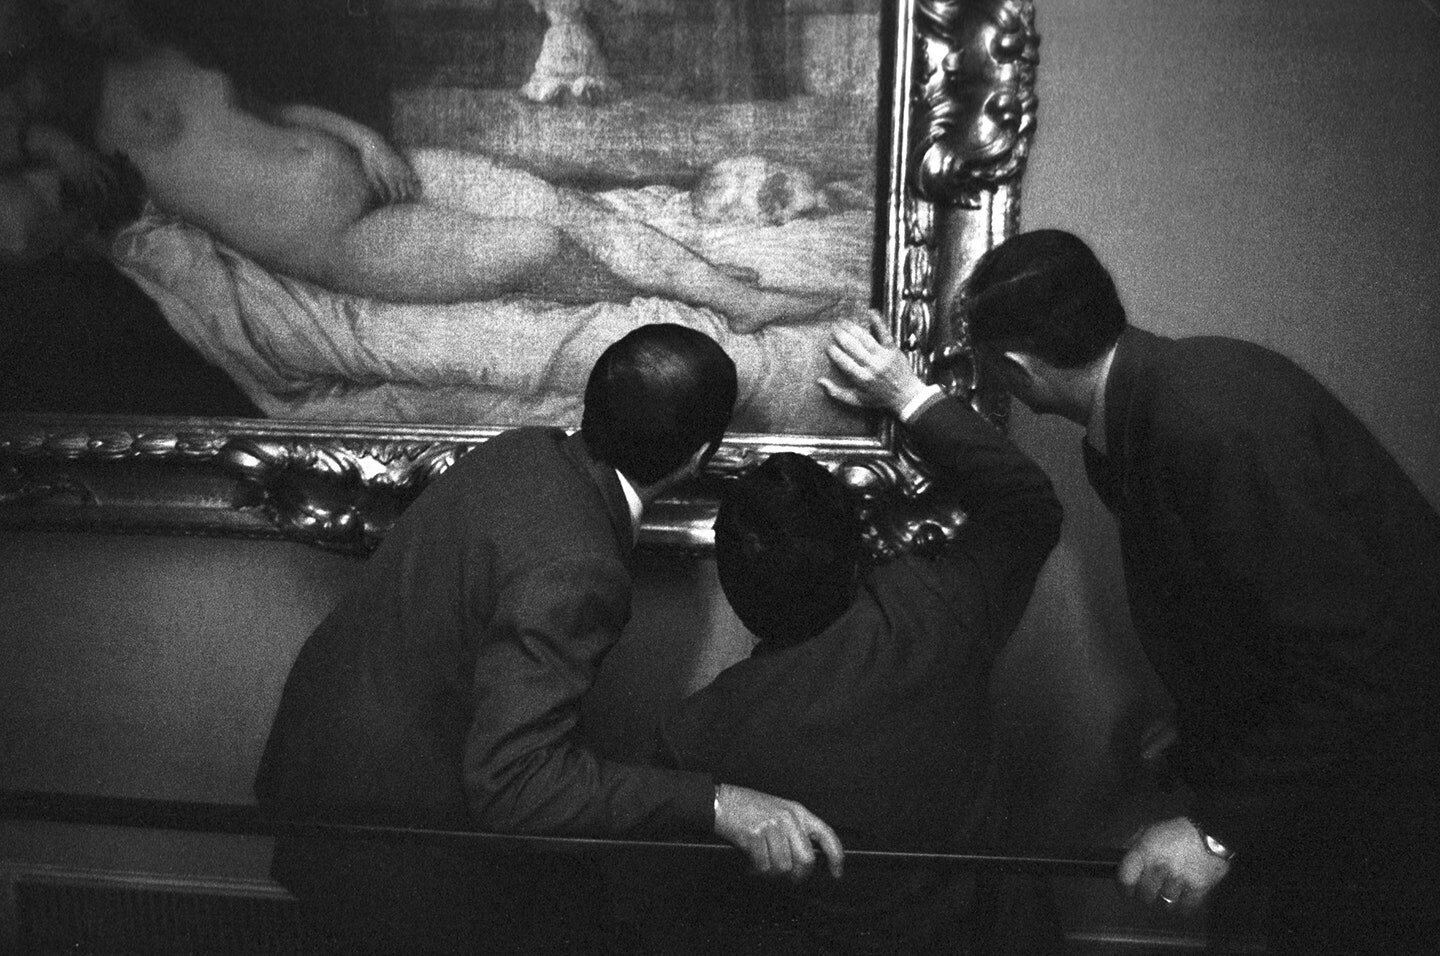 Галерея Уффици, Флоренция, Италия, 1976. Фотограф Дафидд Джонс